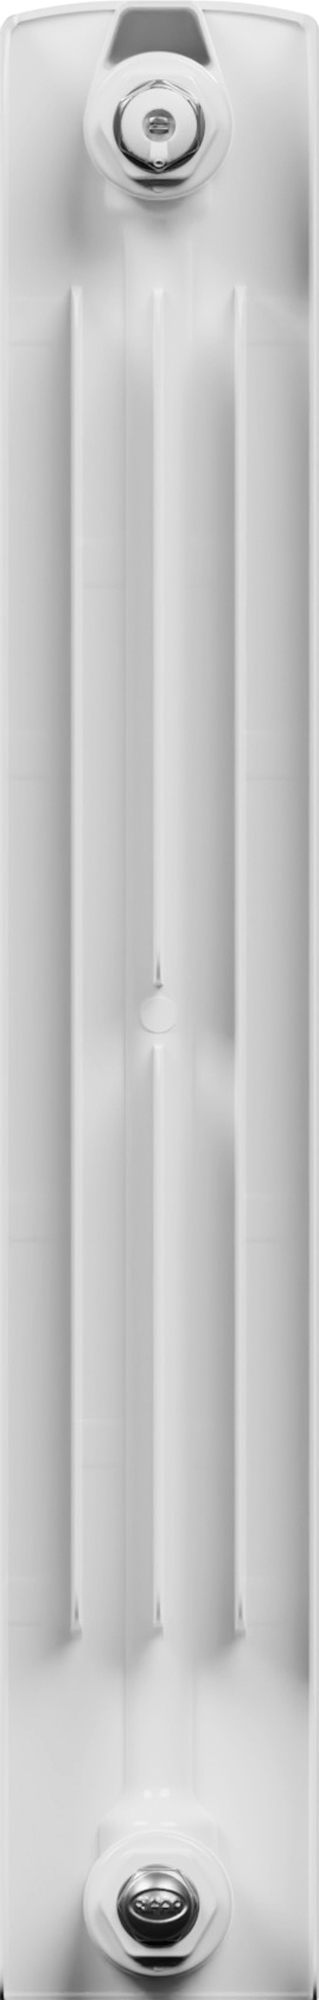 Радиатор Equation 500/90 4 секции двухсторонний биметалл белый - фотография № 7